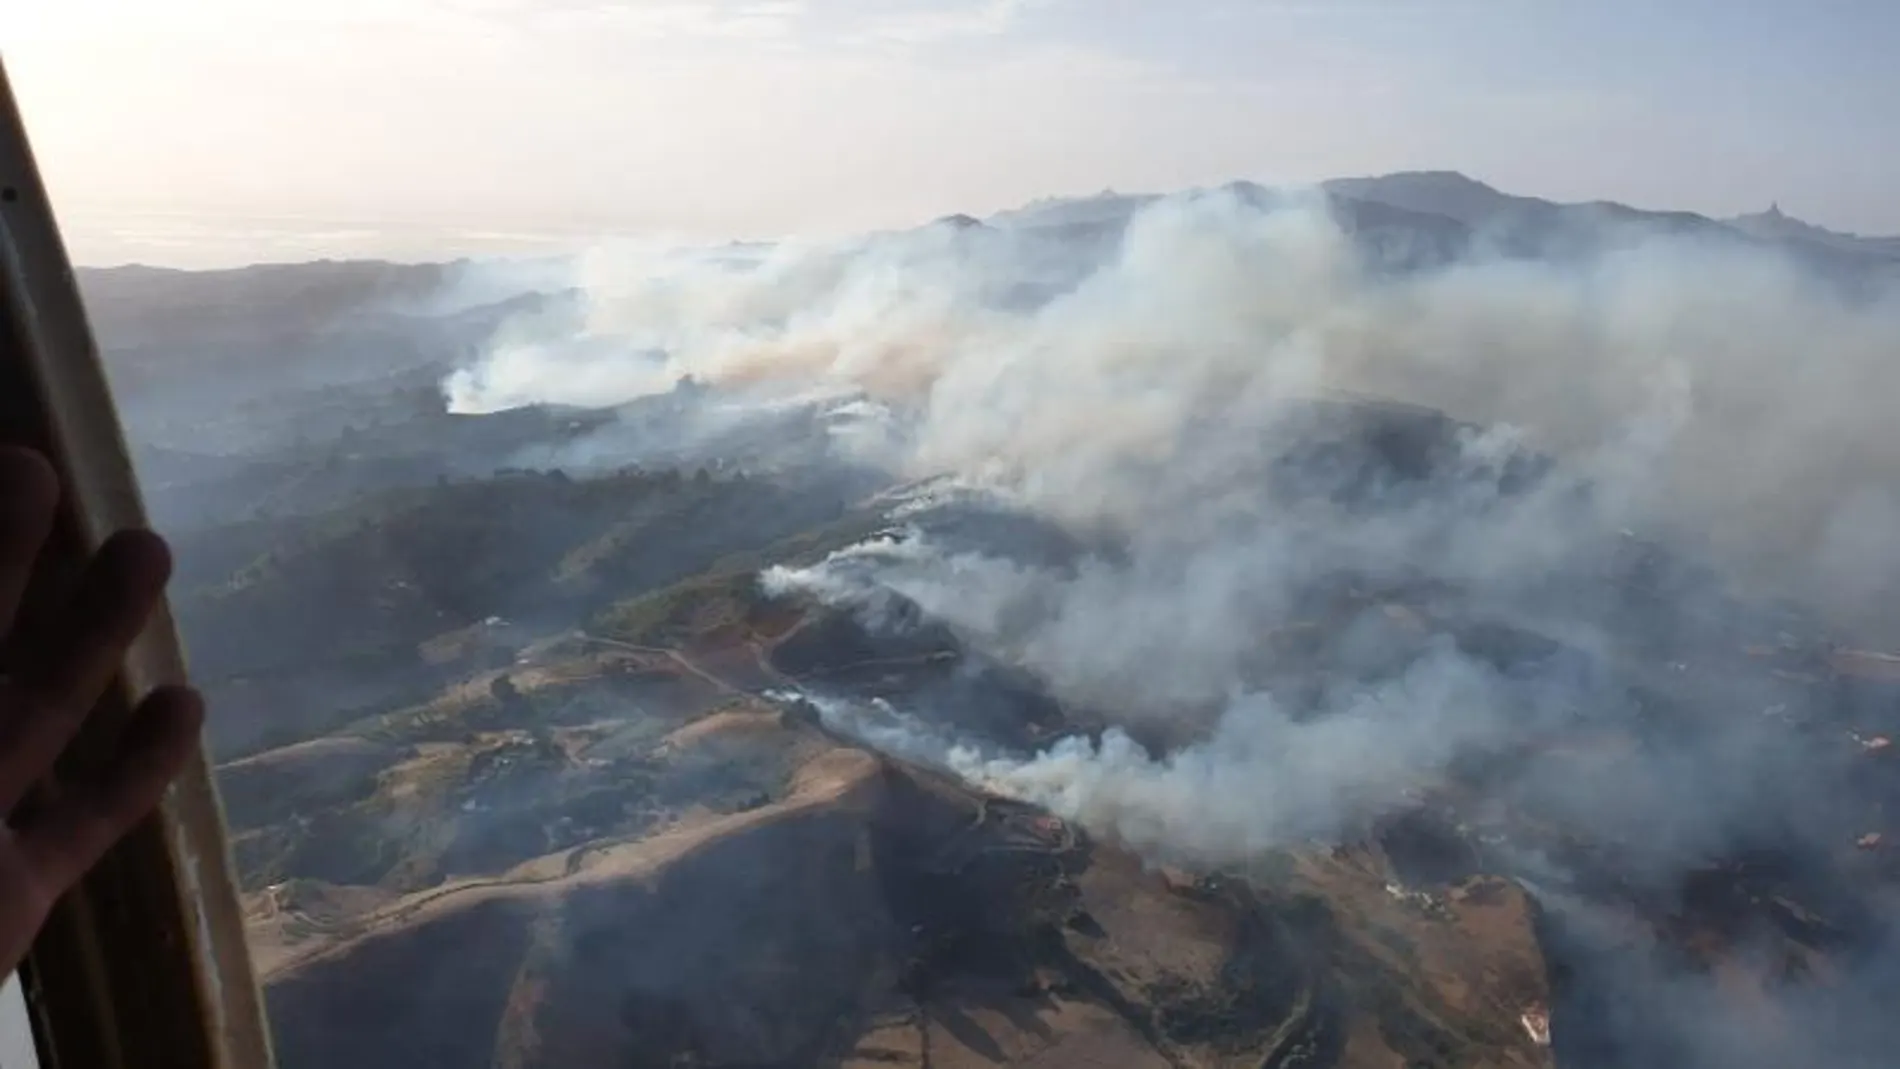 Vista aérea del incendio en Gran Canaria